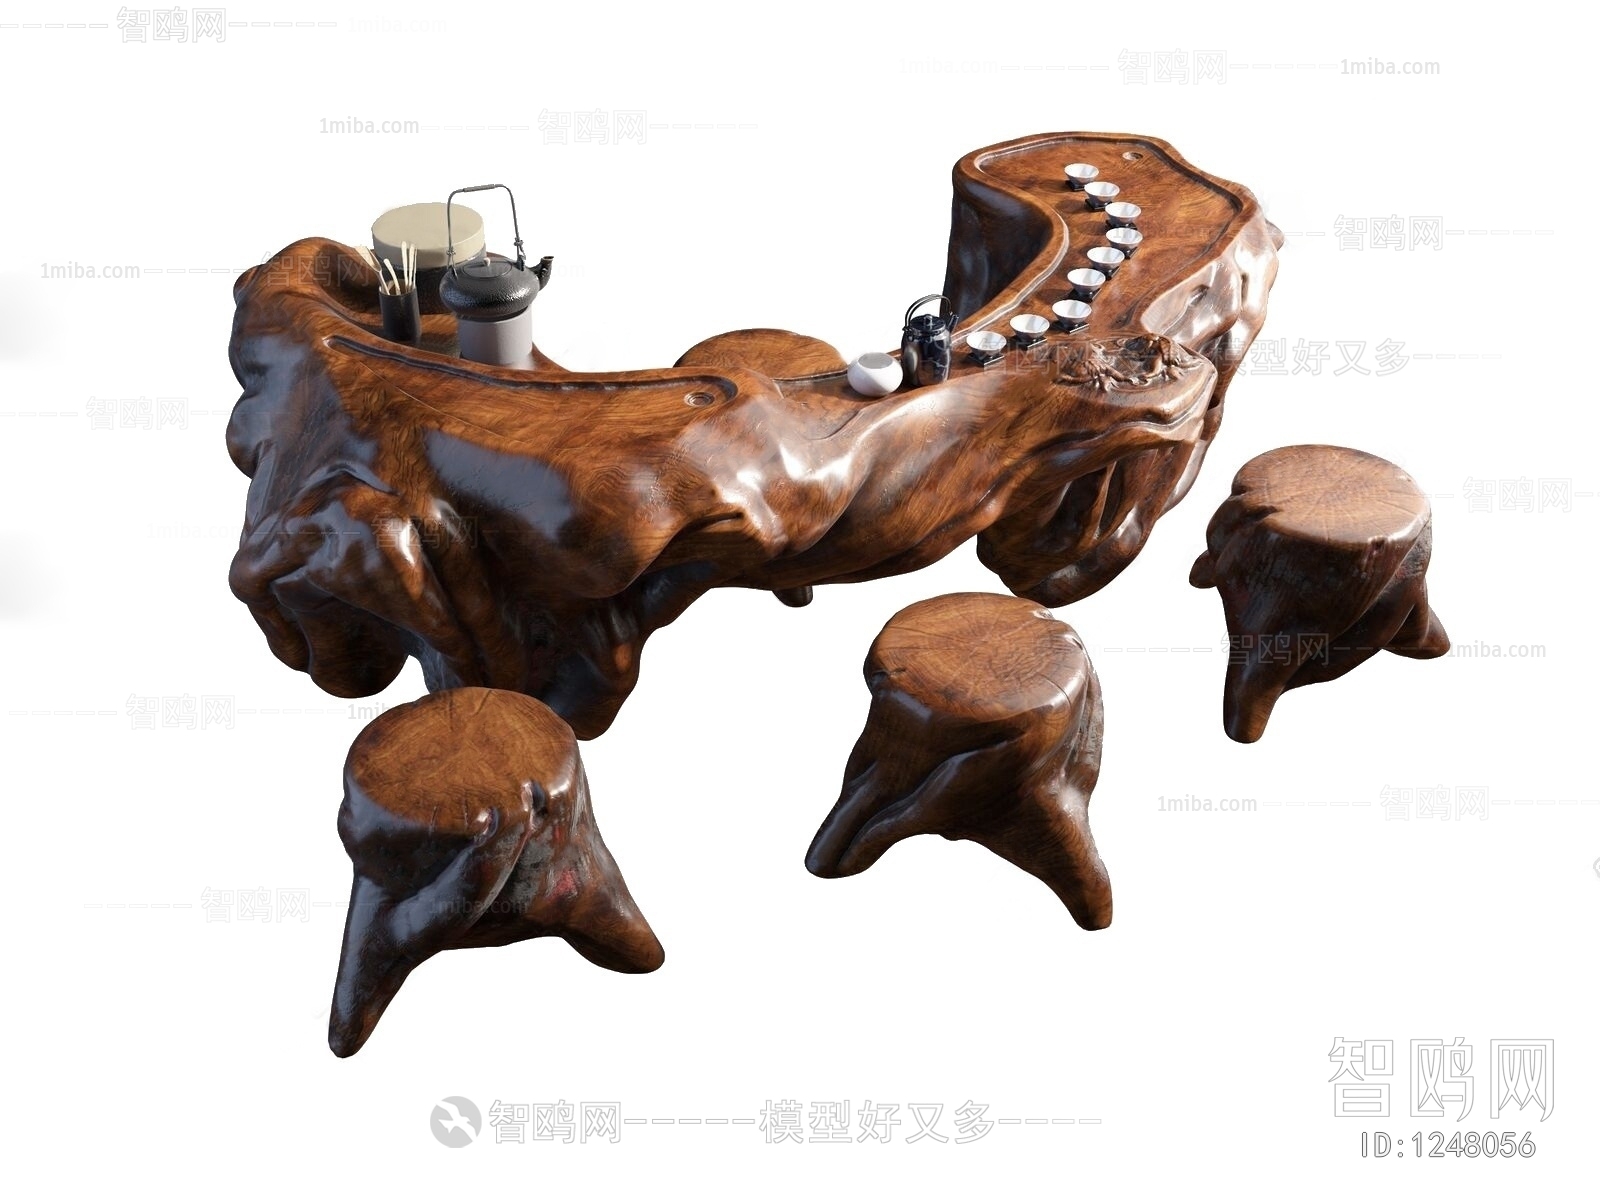 中式茶桌椅